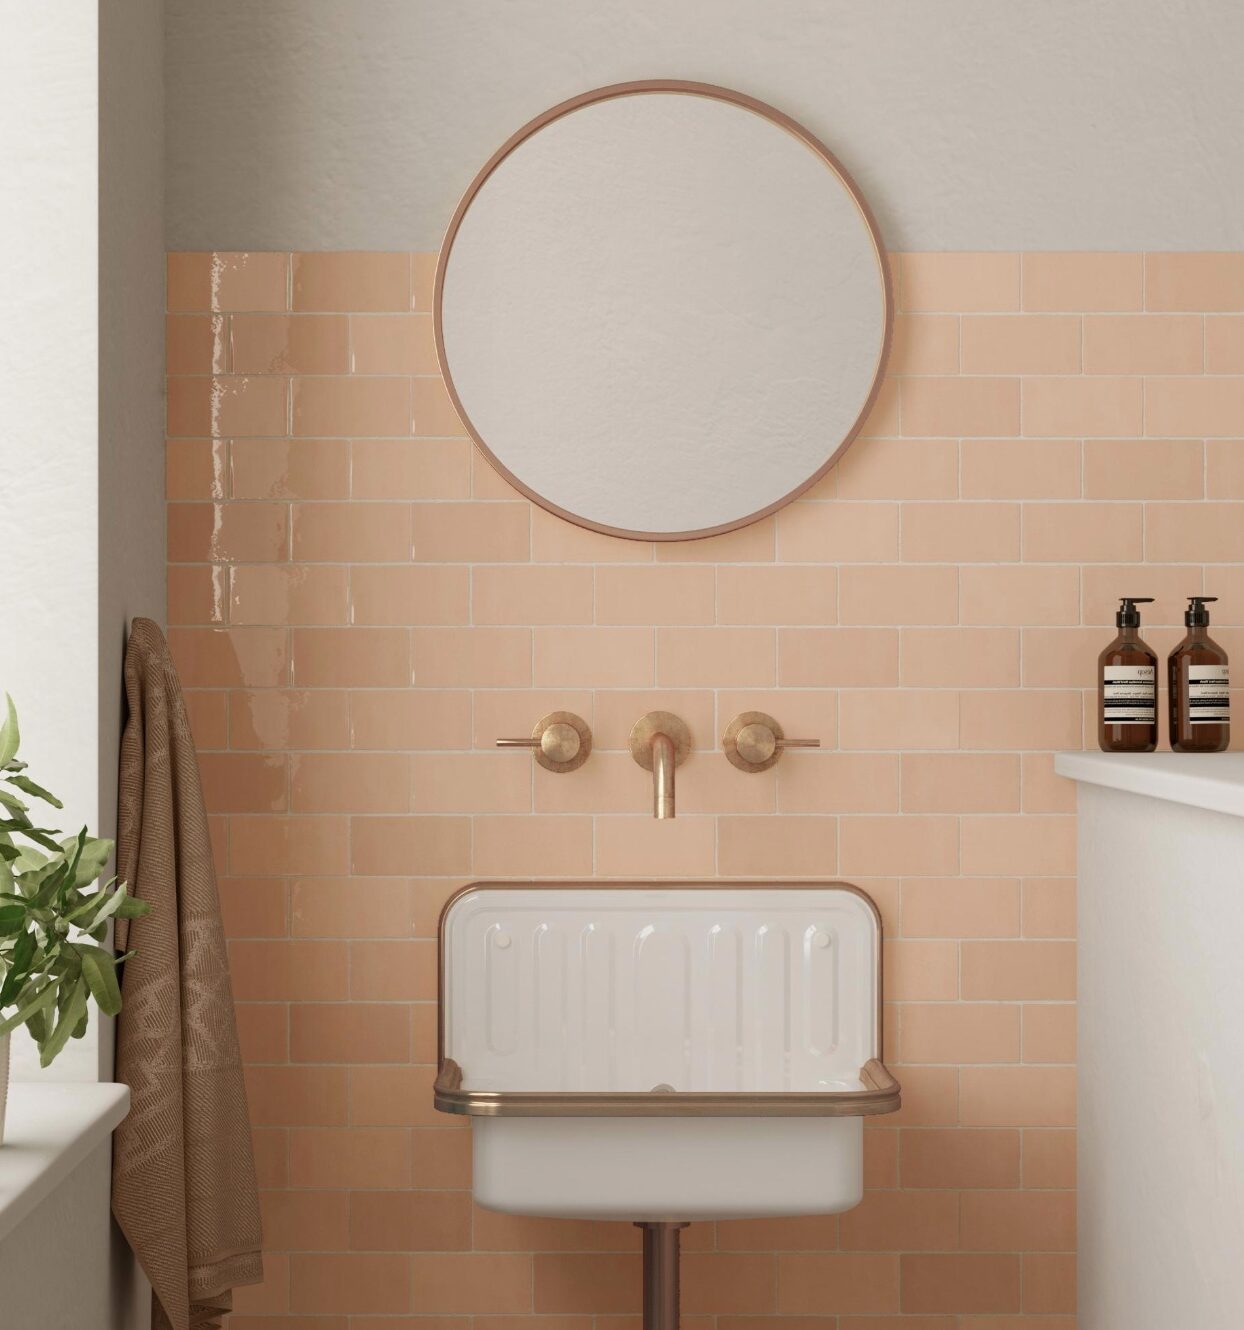 lavabo deco vintage retro blanc mur rose carrelage carreaux miroir rond